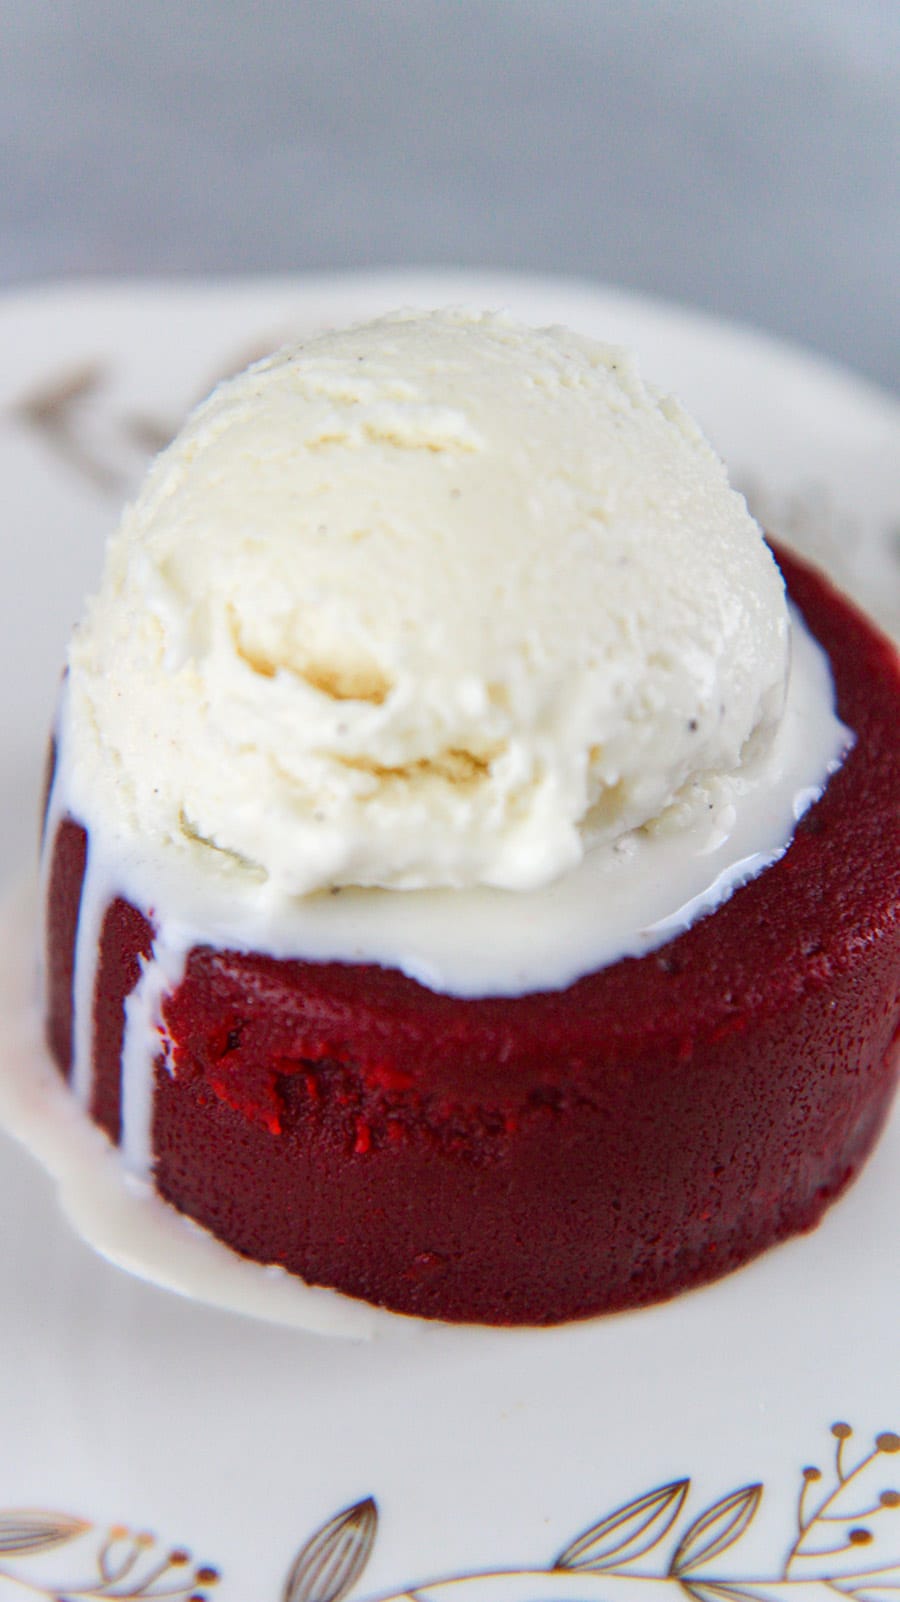 red velvet lava cake with vanilla ice cream on top.